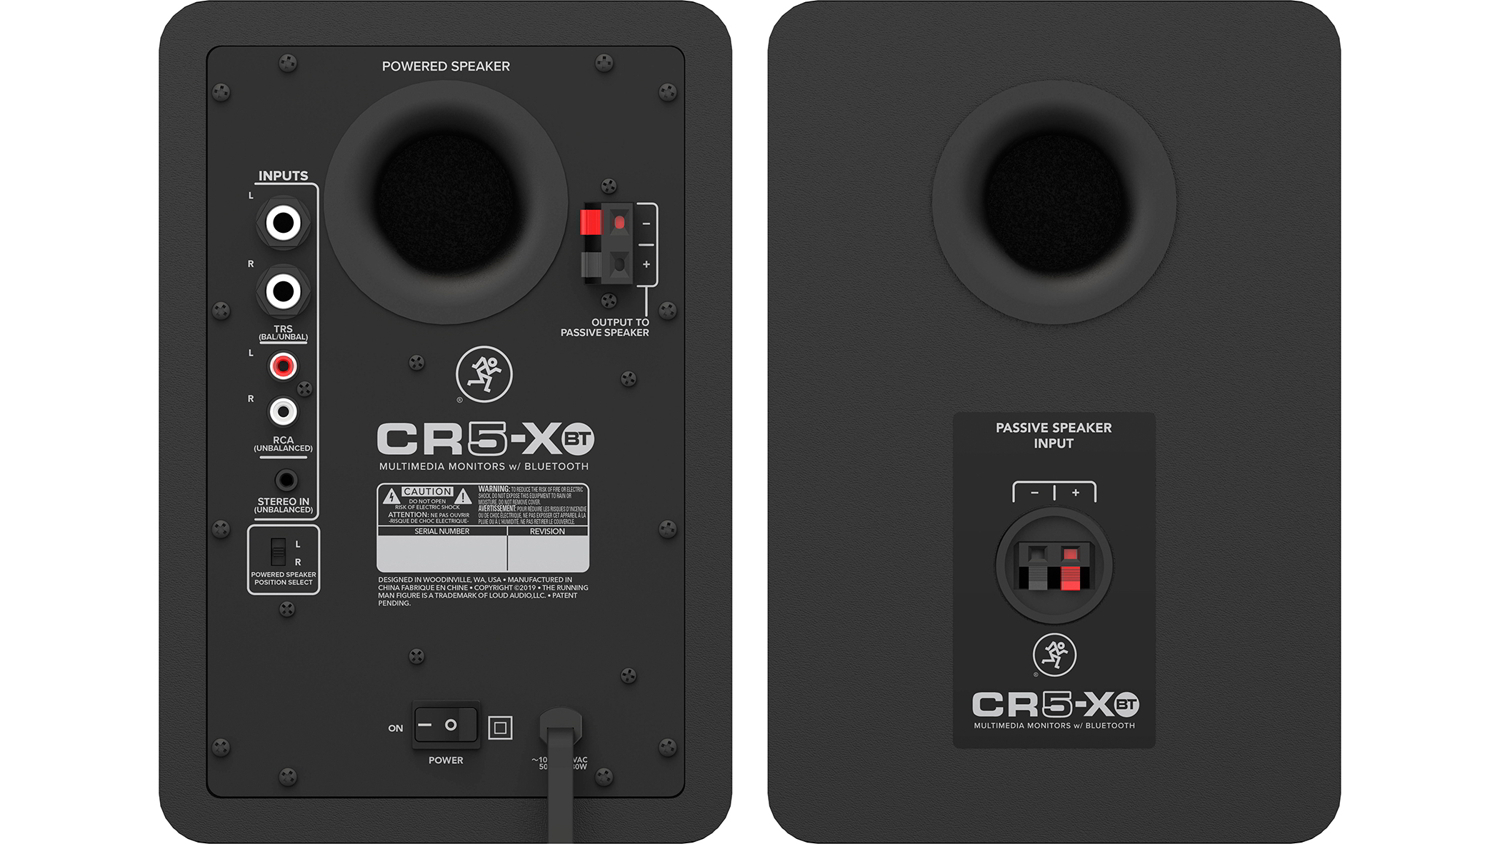 CR5-XBT ペア背面画像